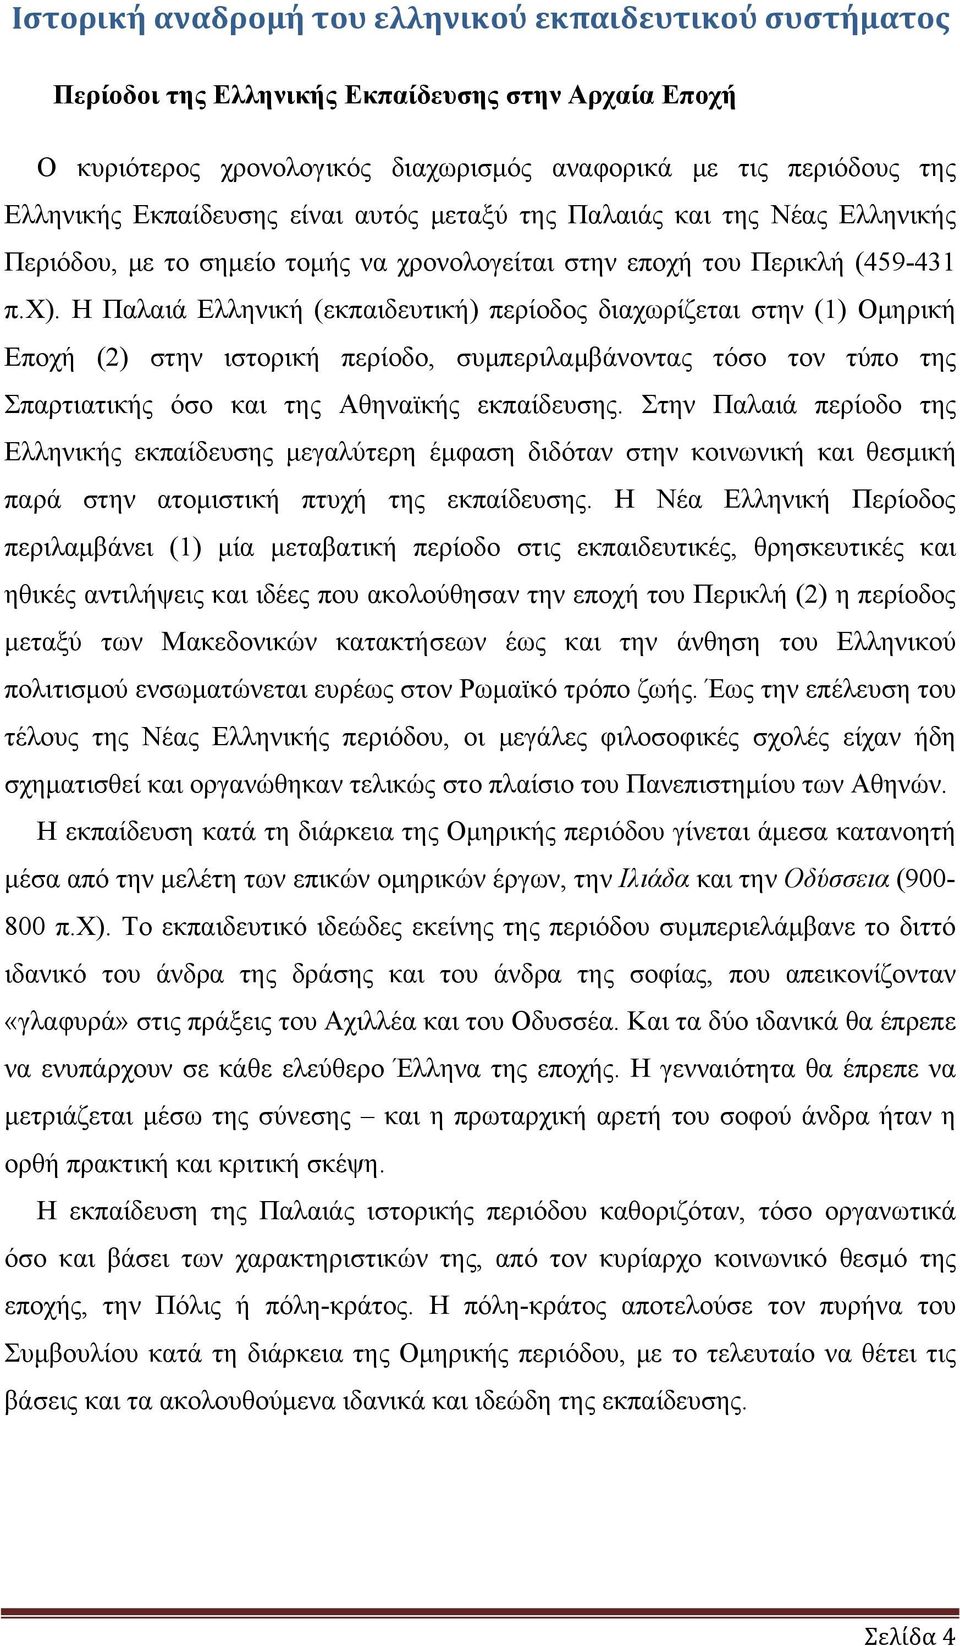 Η Παλαιά Ελληνική (εκπαιδευτική) περίοδος διαχωρίζεται στην (1) Ομηρική Εποχή (2) στην ιστορική περίοδο, συμπεριλαμβάνοντας τόσο τον τύπο της Σπαρτιατικής όσο και της Αθηναϊκής εκπαίδευσης.